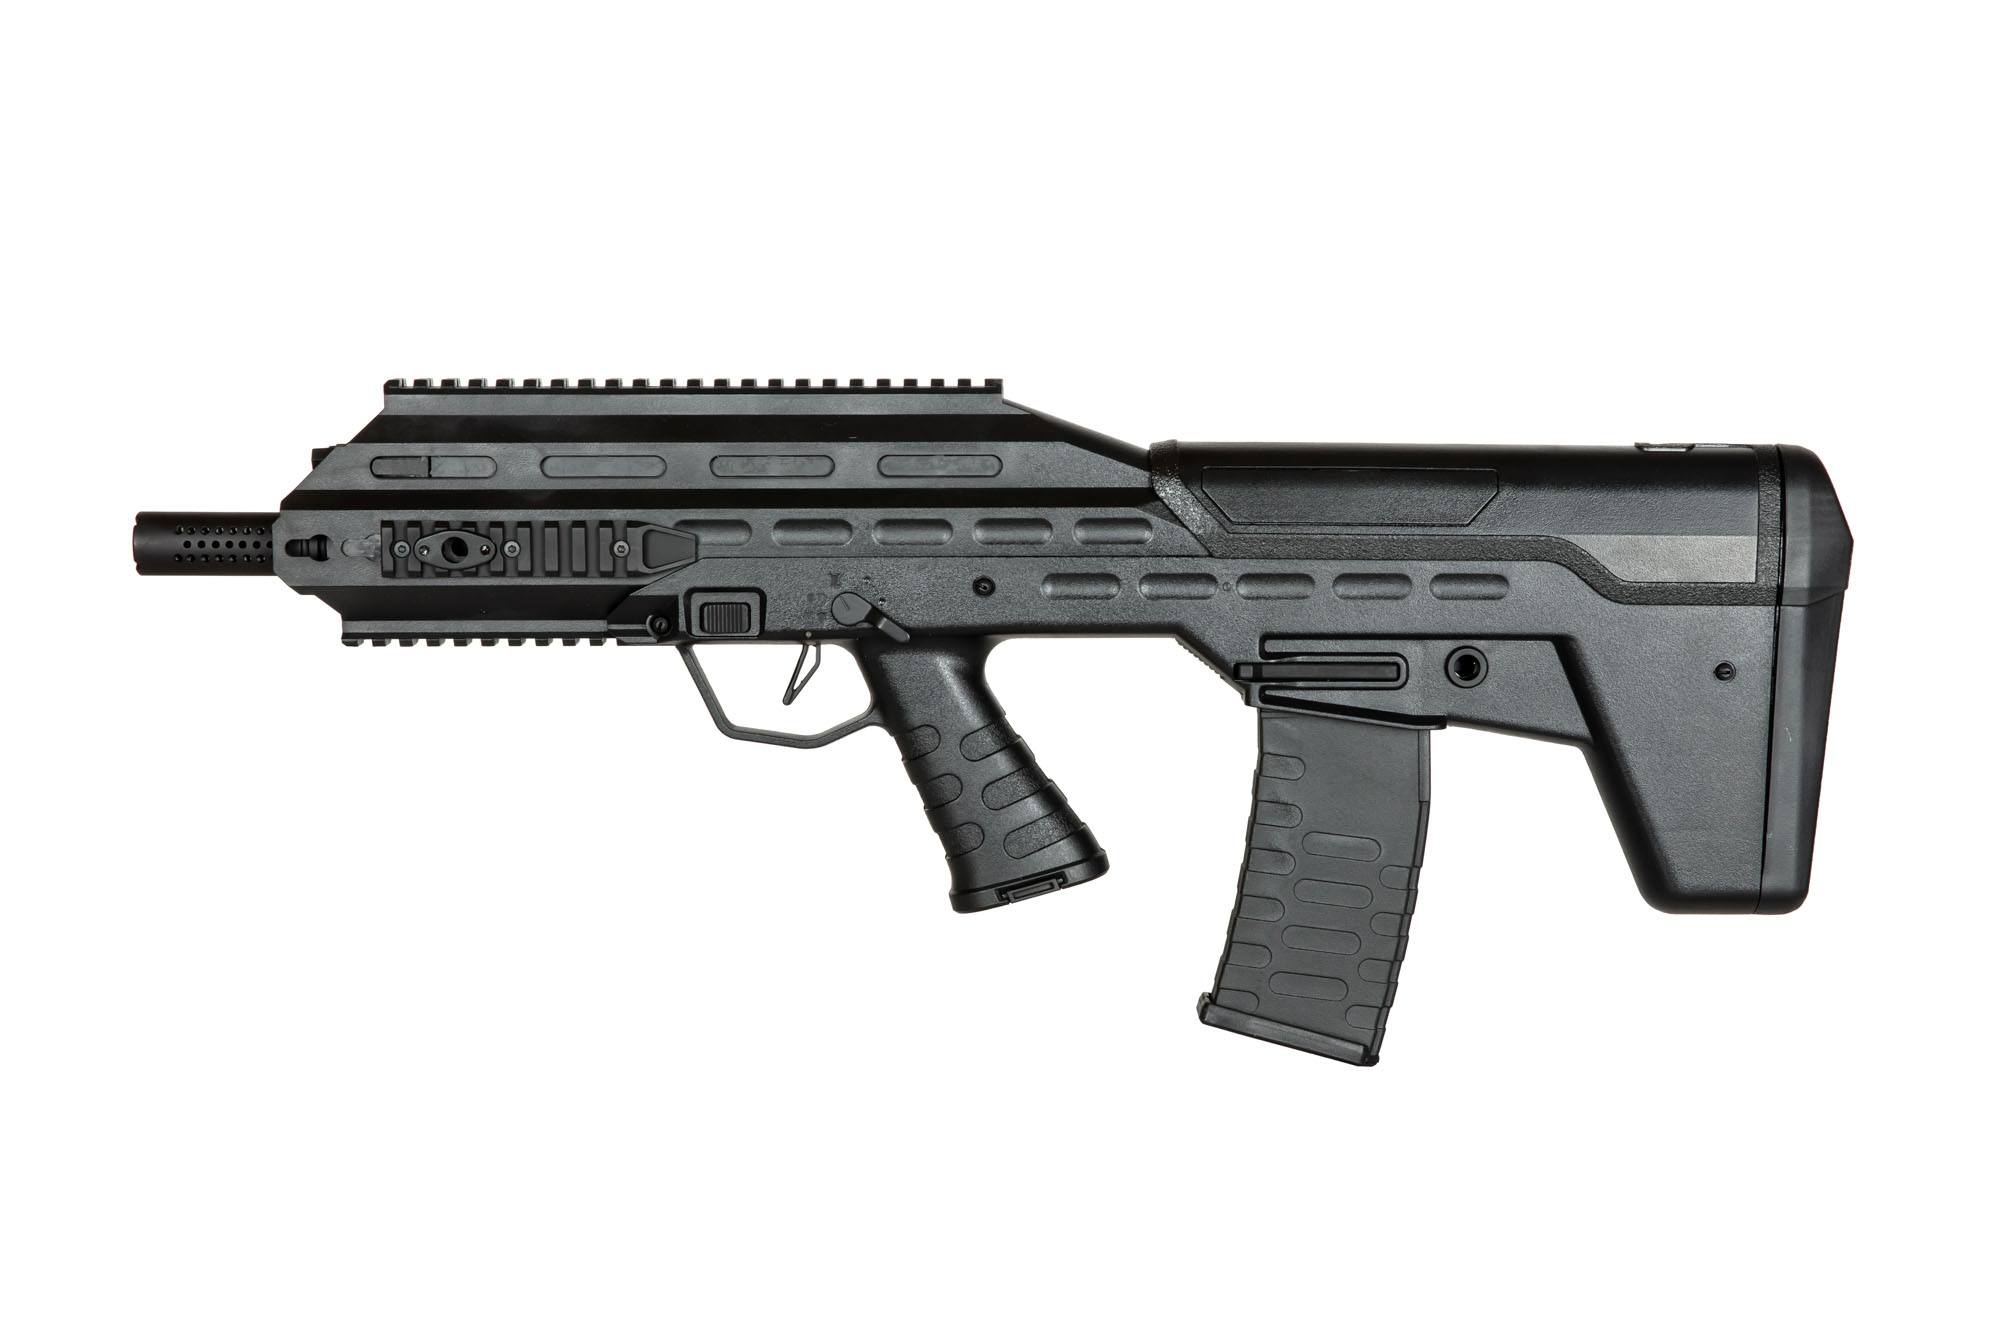 UAR501 Assault Rifle Replica - Black